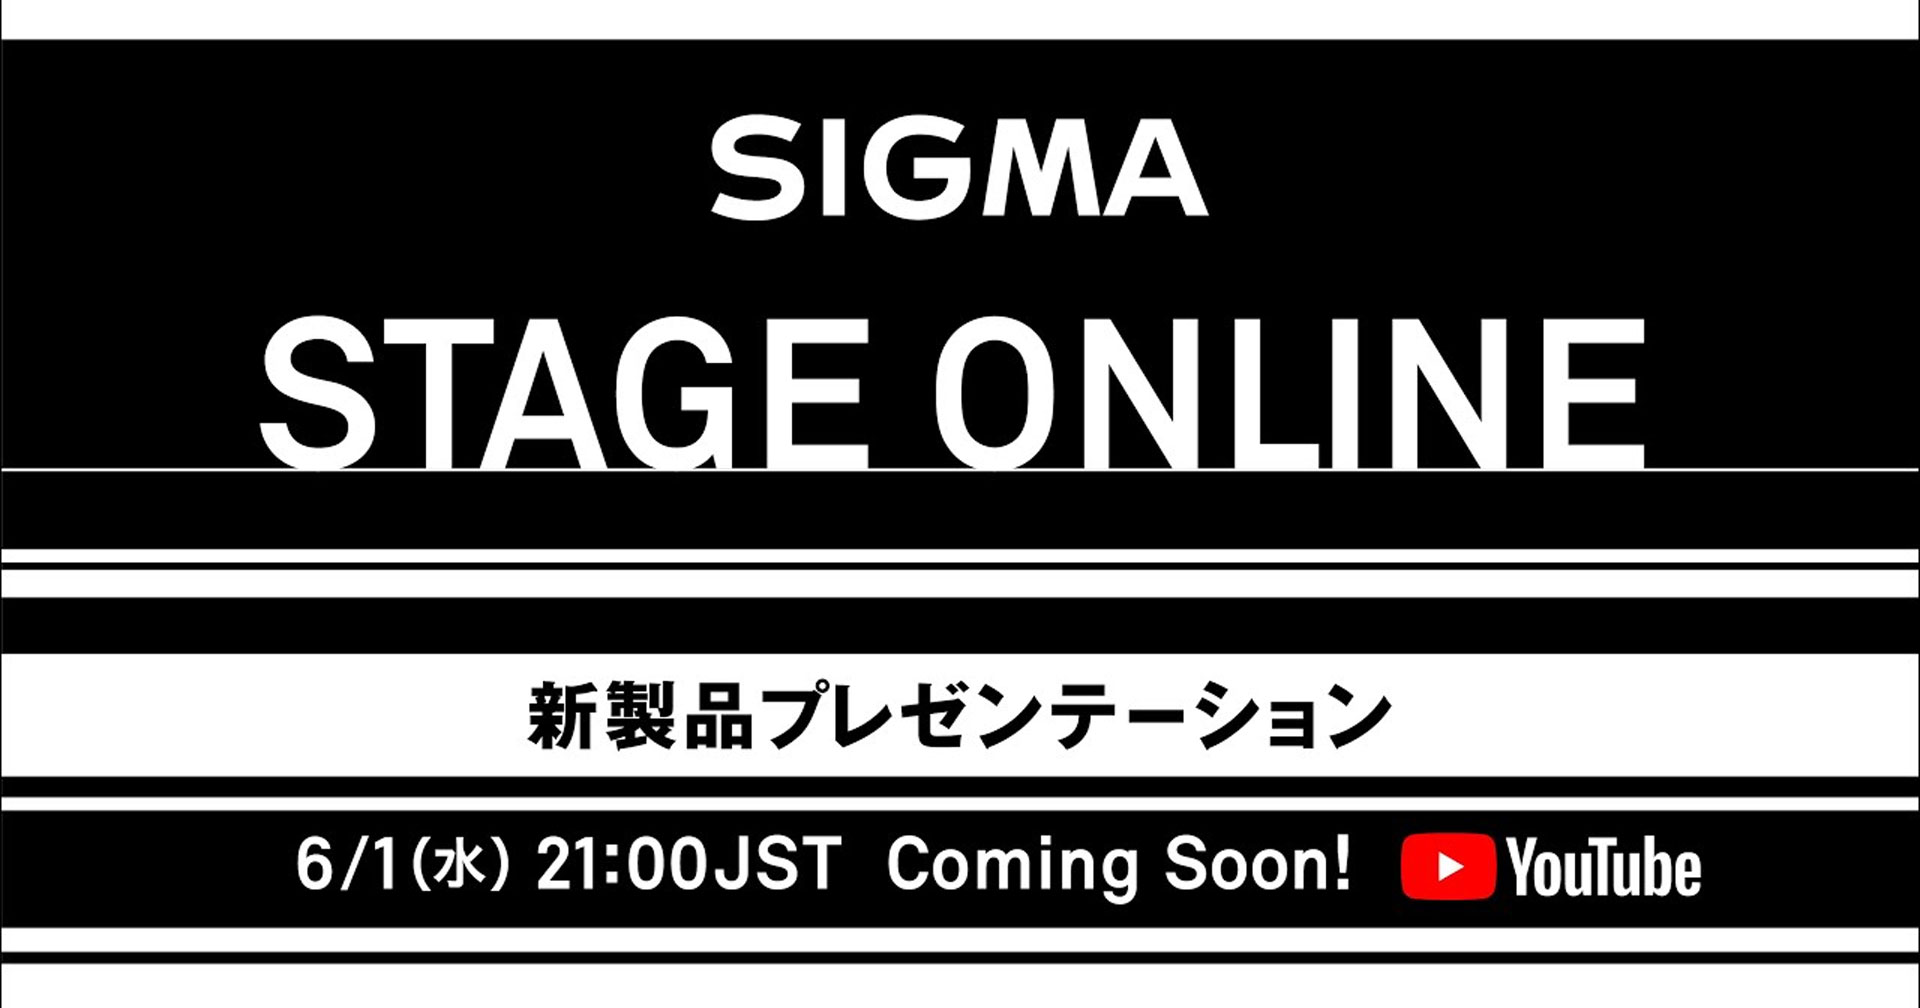 ยืนยัน! งานเปิดตัวเลนส์ใหม่ Sigma Stage Online 1 มิถุนายนนี้